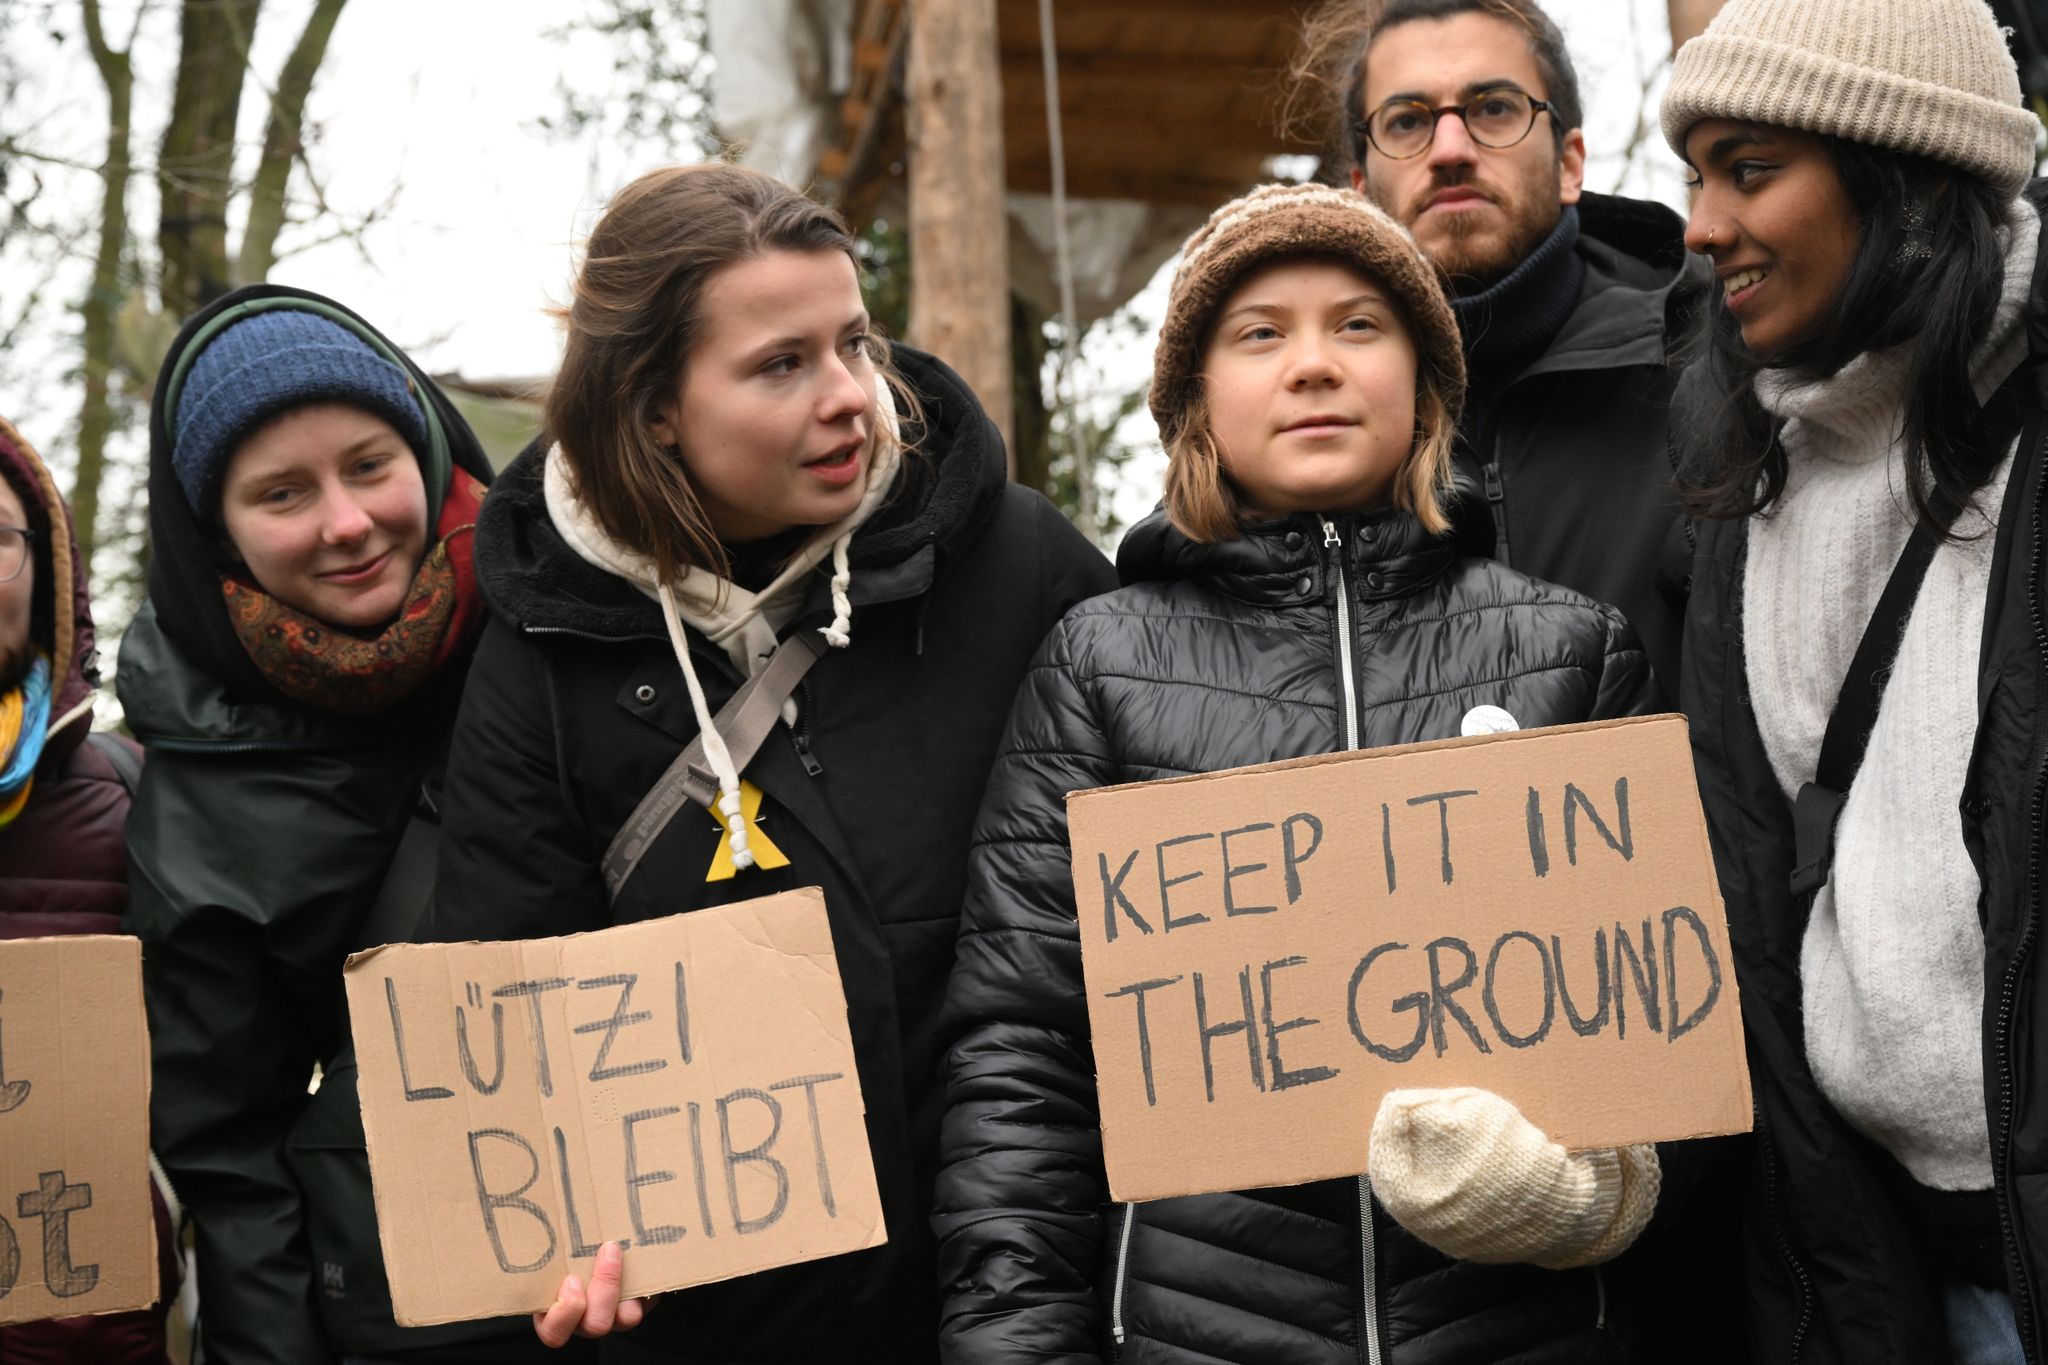 Die Klimaaktivistinnen Luisa Neubauer (2.v.l) und Greta Thunberg (3.v.r) stehen im Braunkohleort Lützerath.